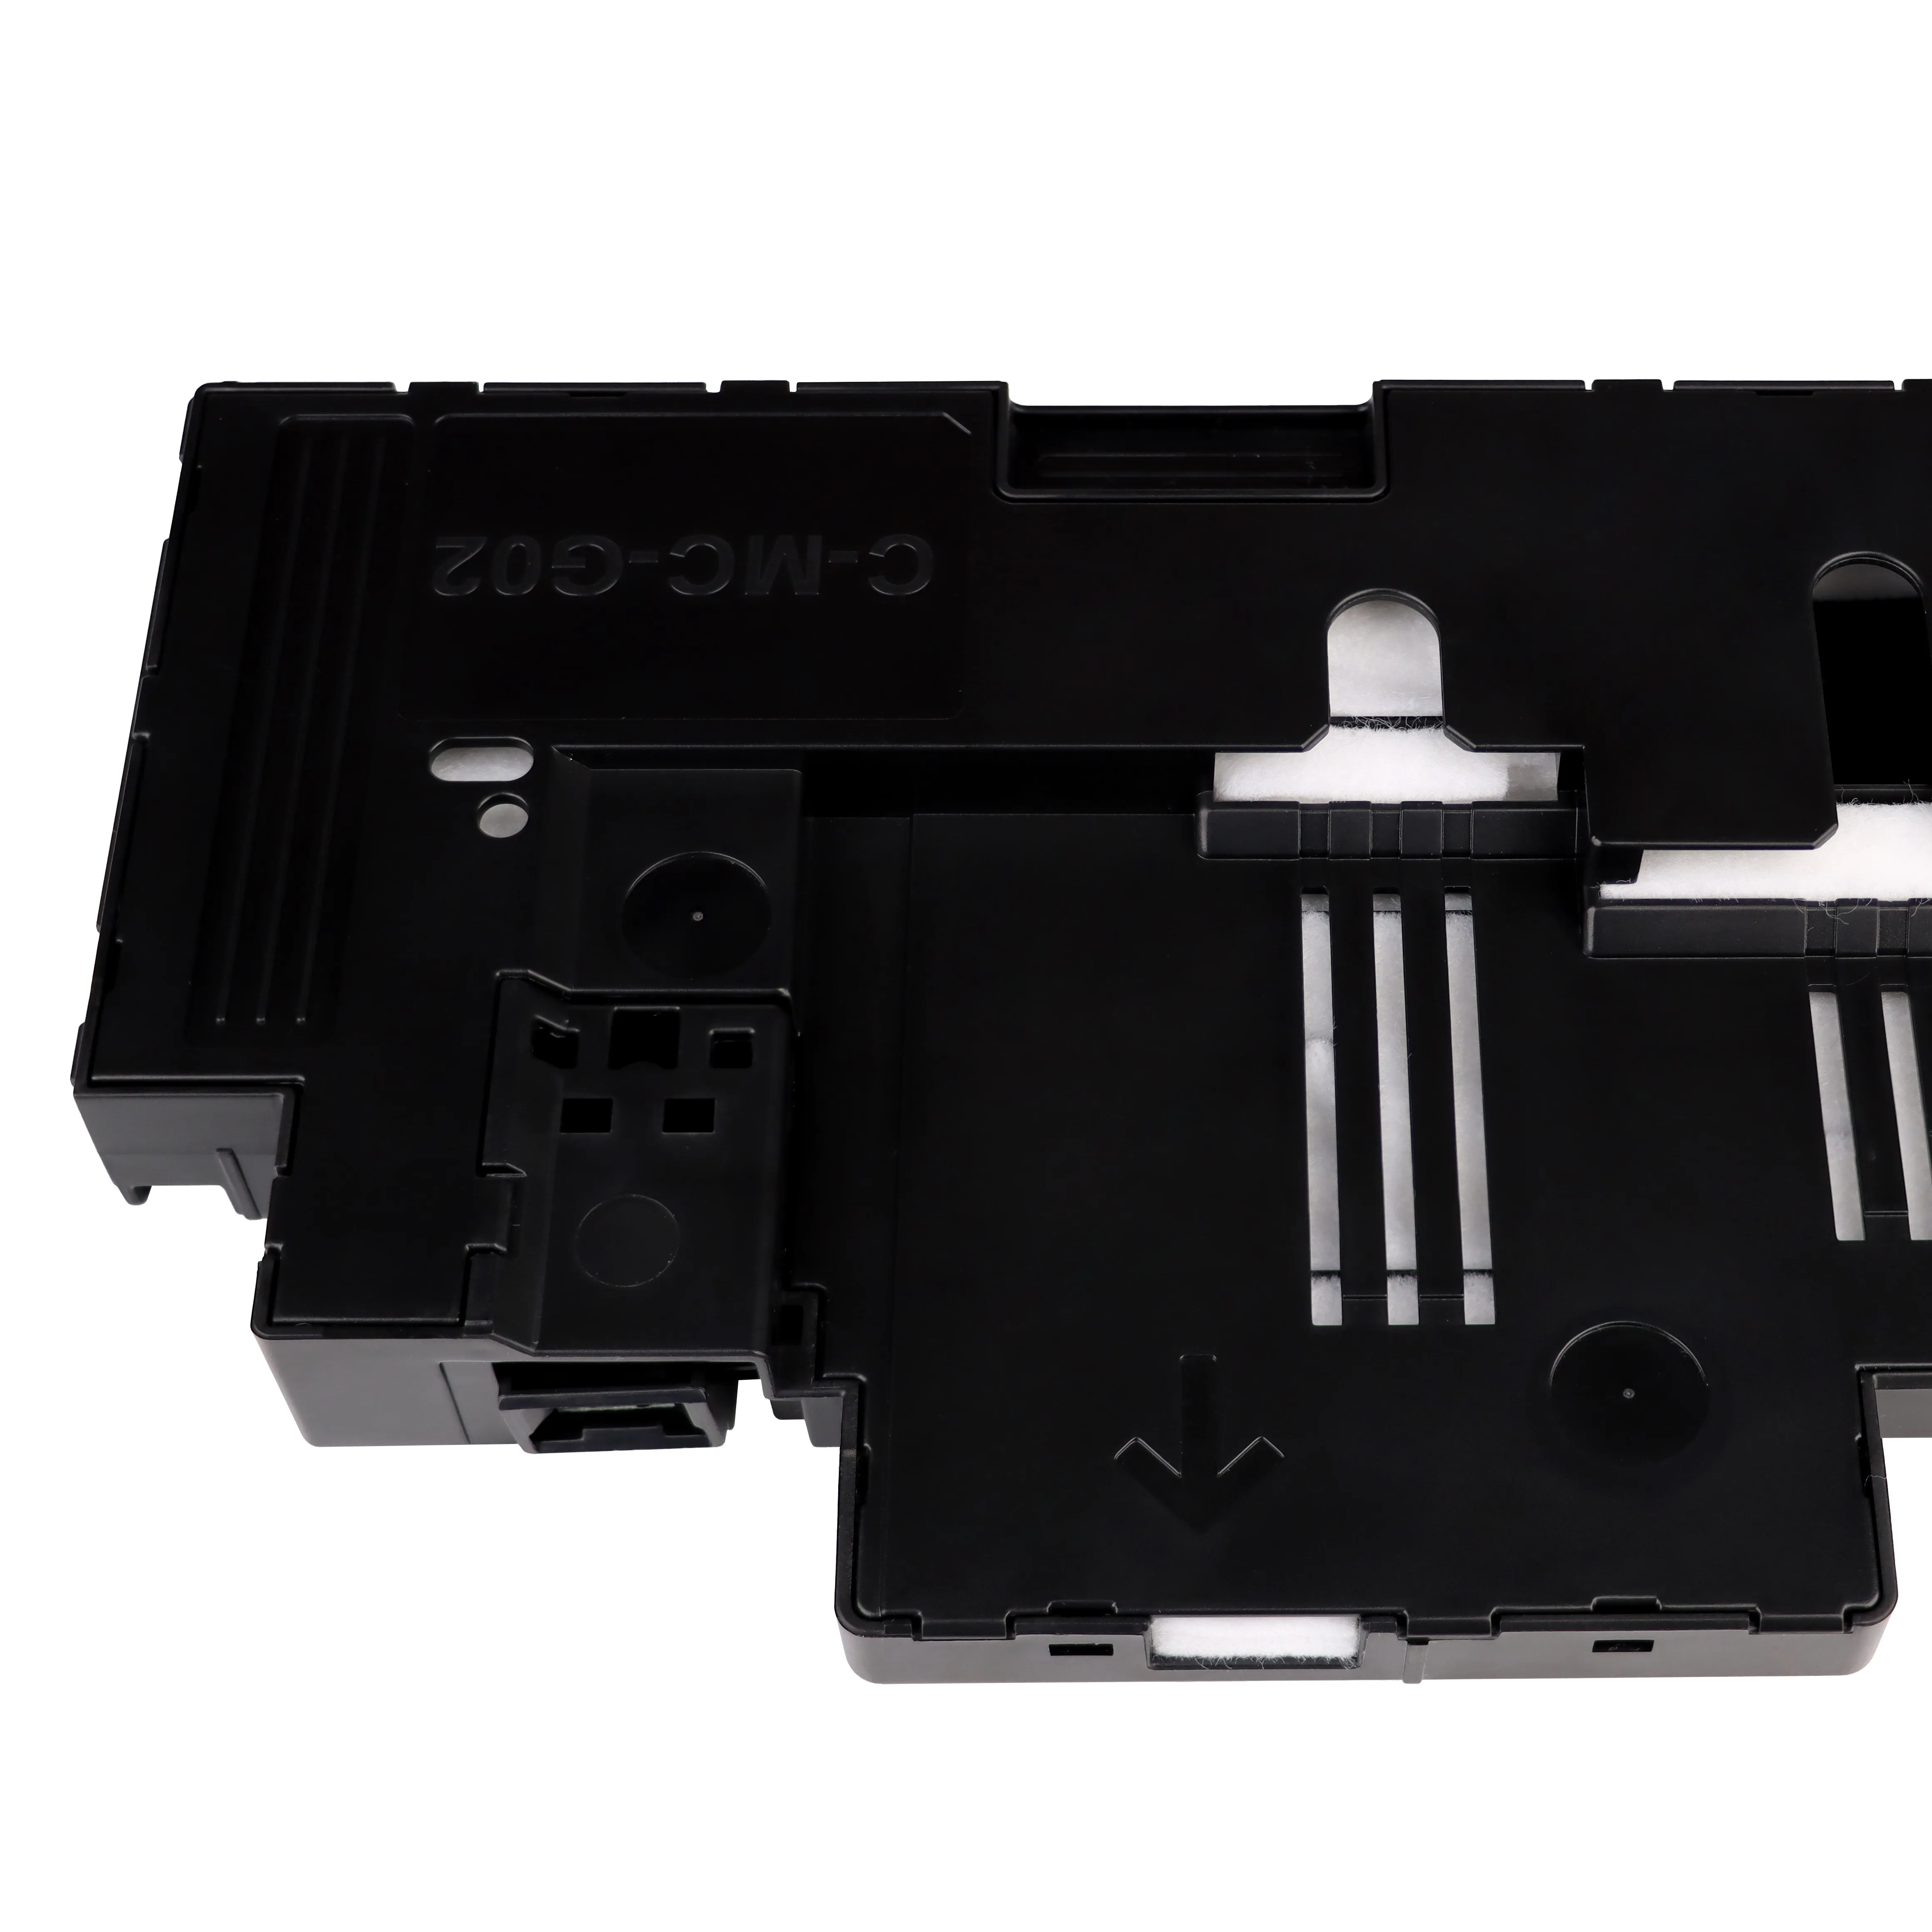 Yüksek kaliteli MC G02 uyumlu atık mürekkep bakım kutusu kartuş tankı için Canon PIXMA G2020 G1020 G2420 yazıcı